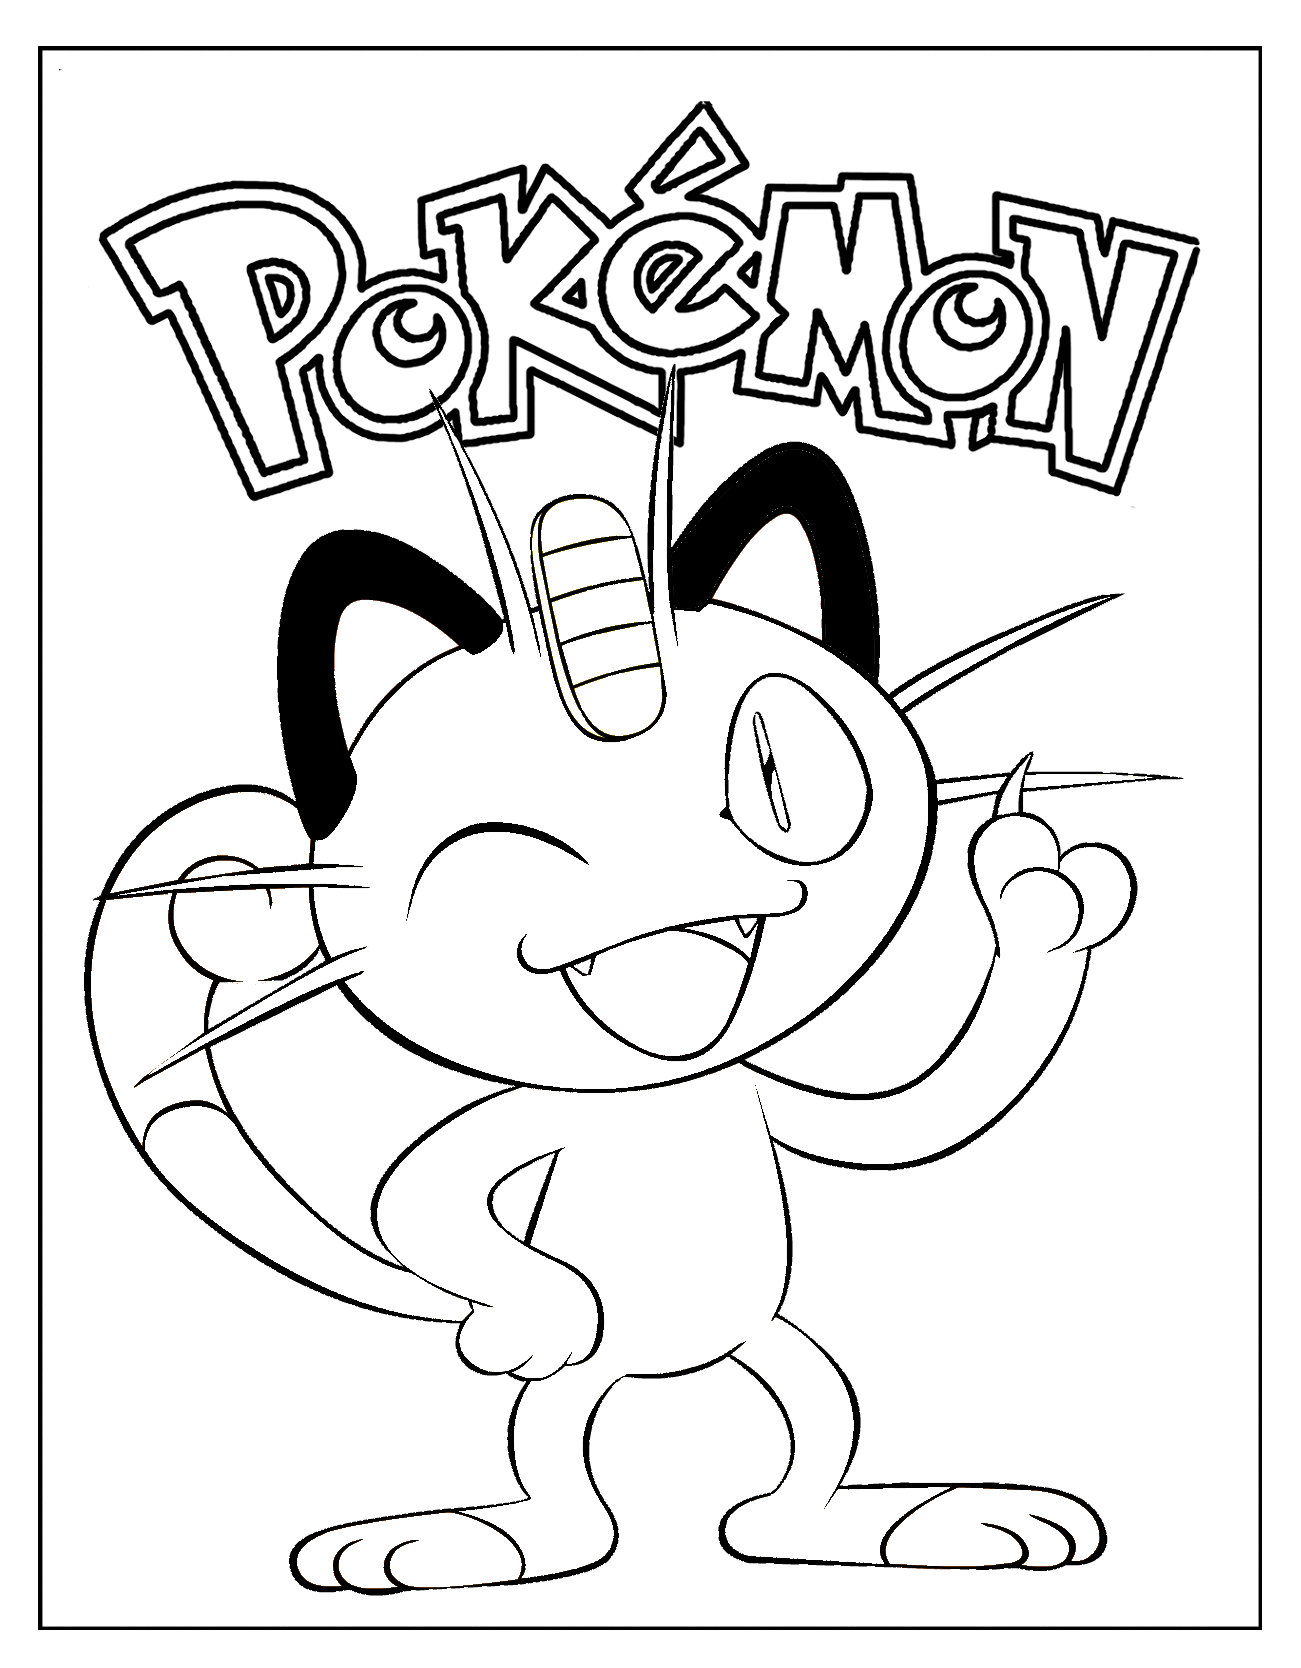 meowth pokemon coloring sheet | Pokemon coloring sheets, Pokemon ...